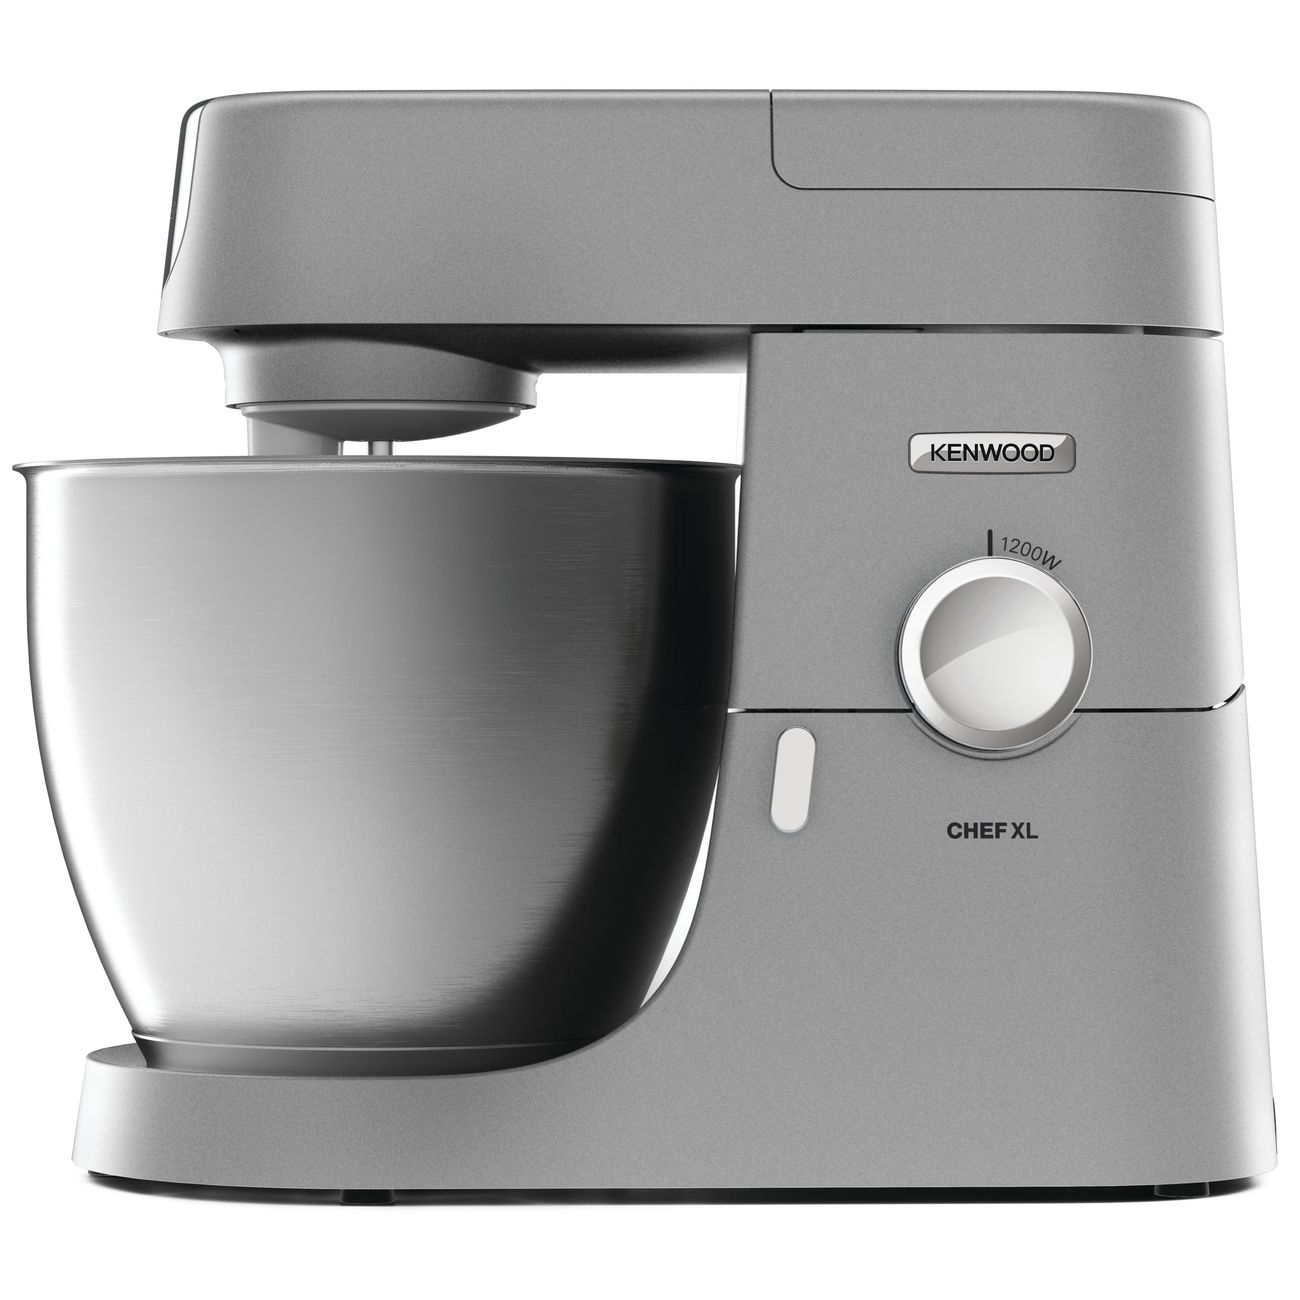 Кухонная машина Kenwood Chef XL KVL4100.S, серебристый электромясорубка kenwood mg 515 450 вт серебристый